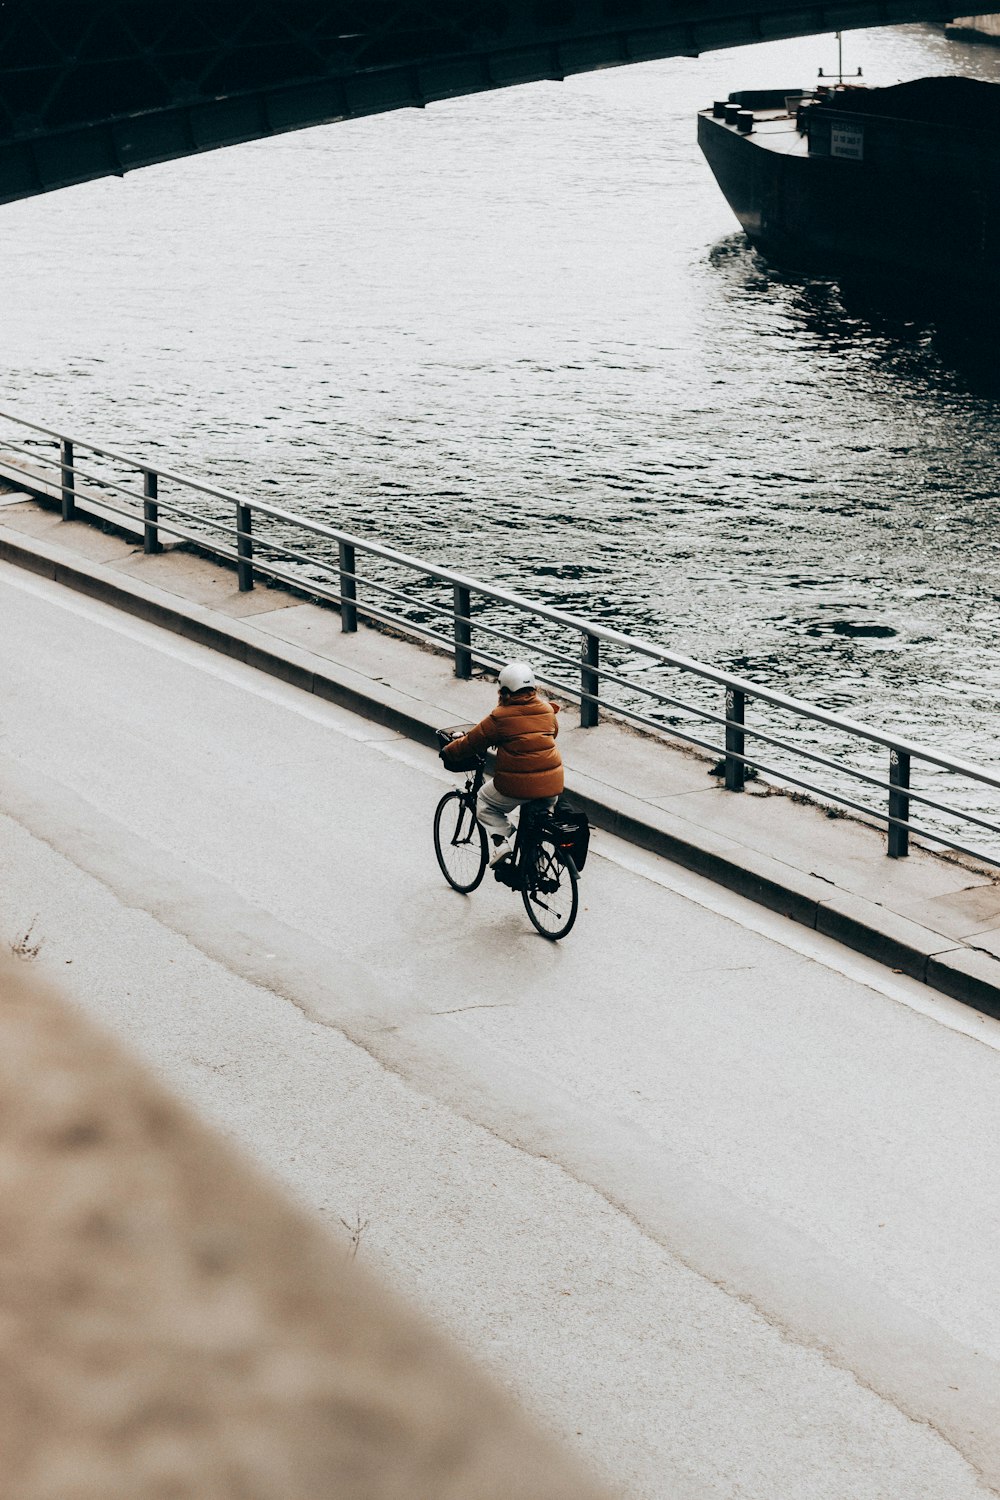 man in orange shirt riding bicycle on bridge during daytime